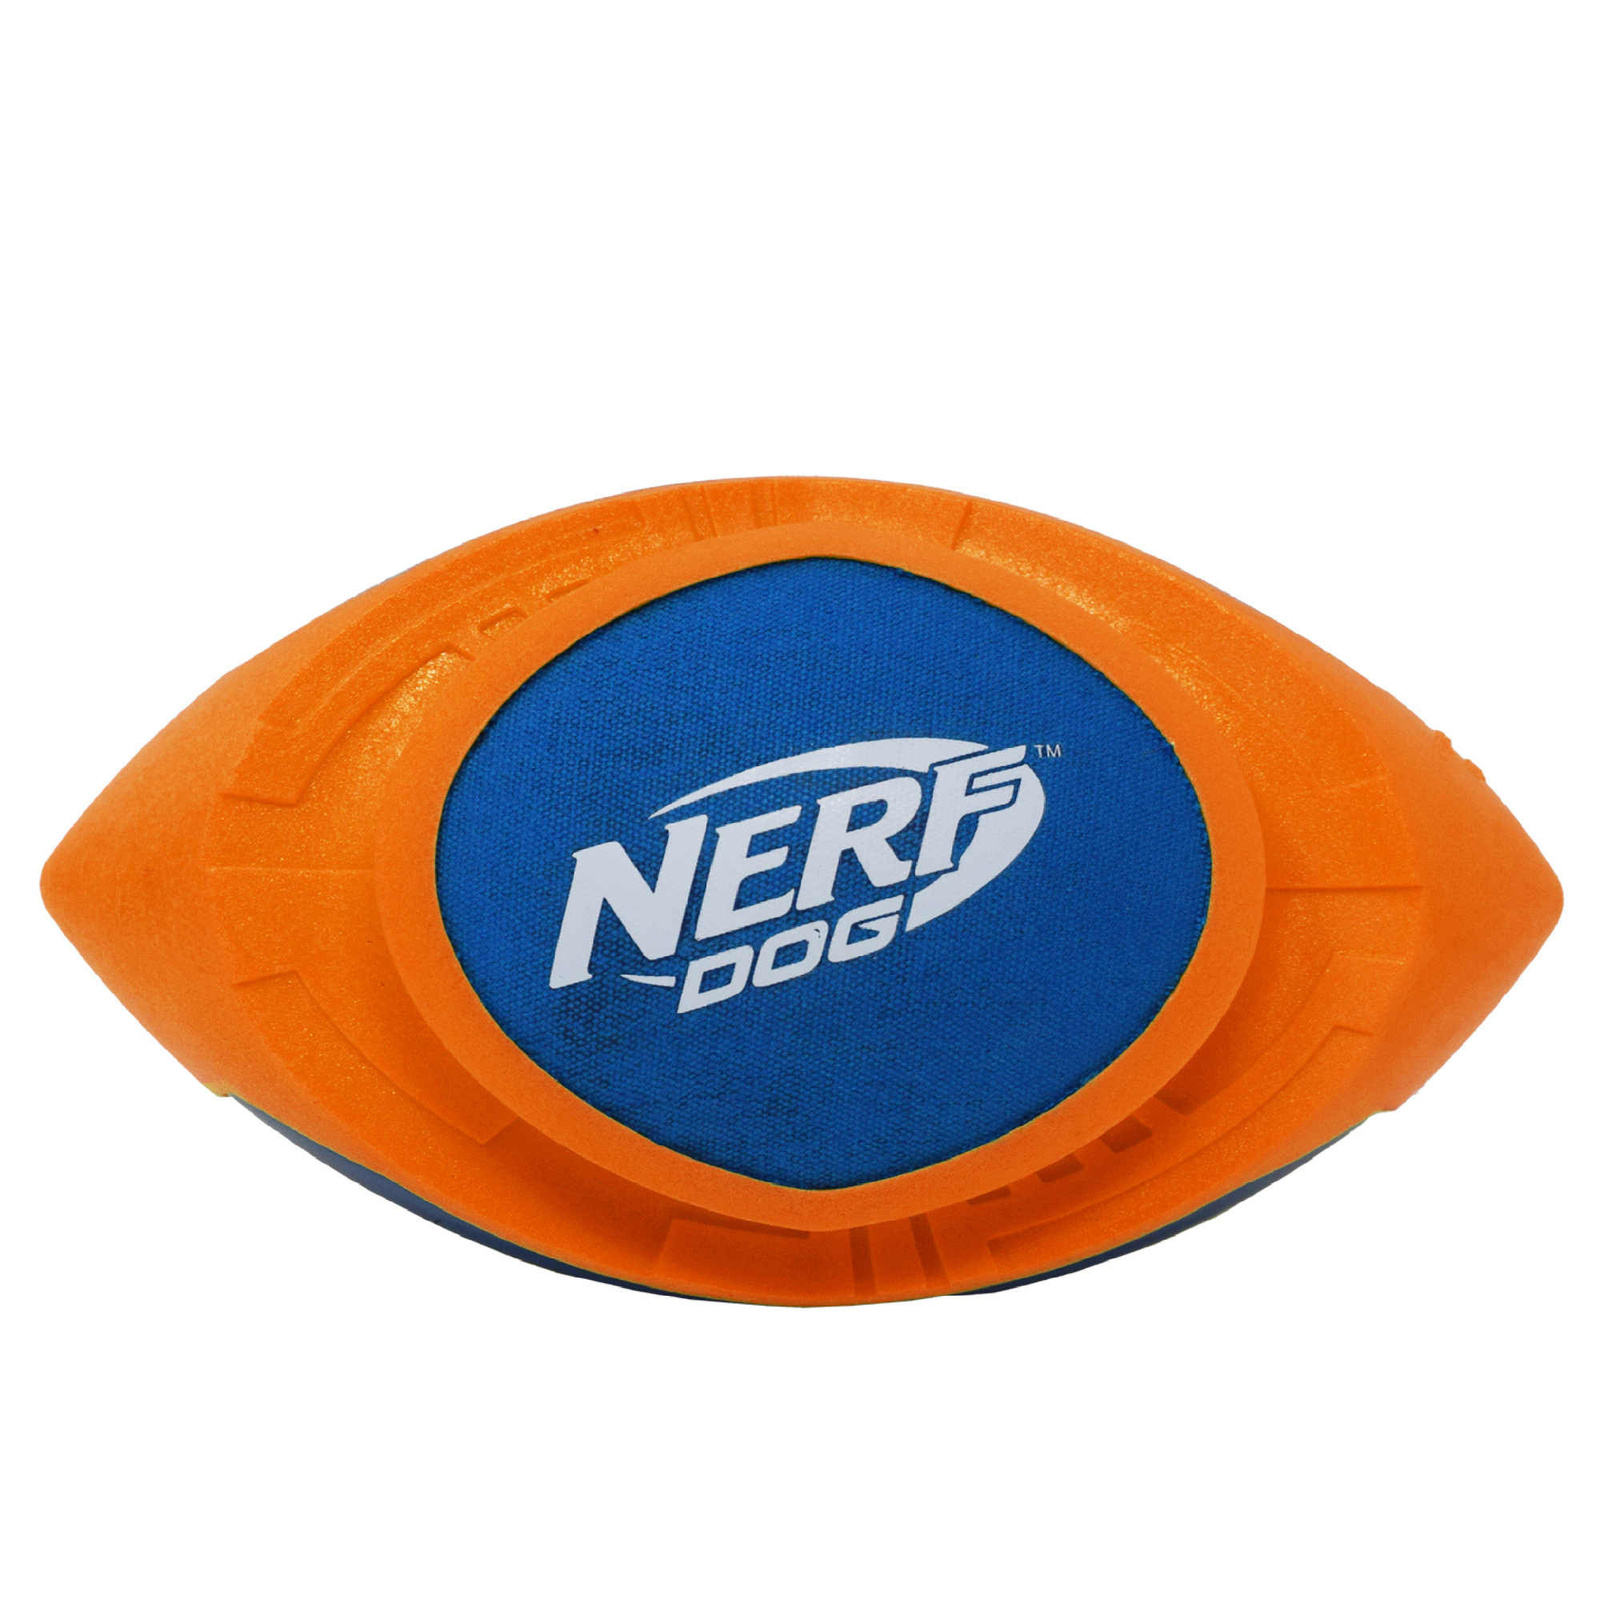 Nerf Nerf мяч для регби из вспененной резины и нейлона, 18 см (серия Мегатон), (синий/оранжевый) (263 г)